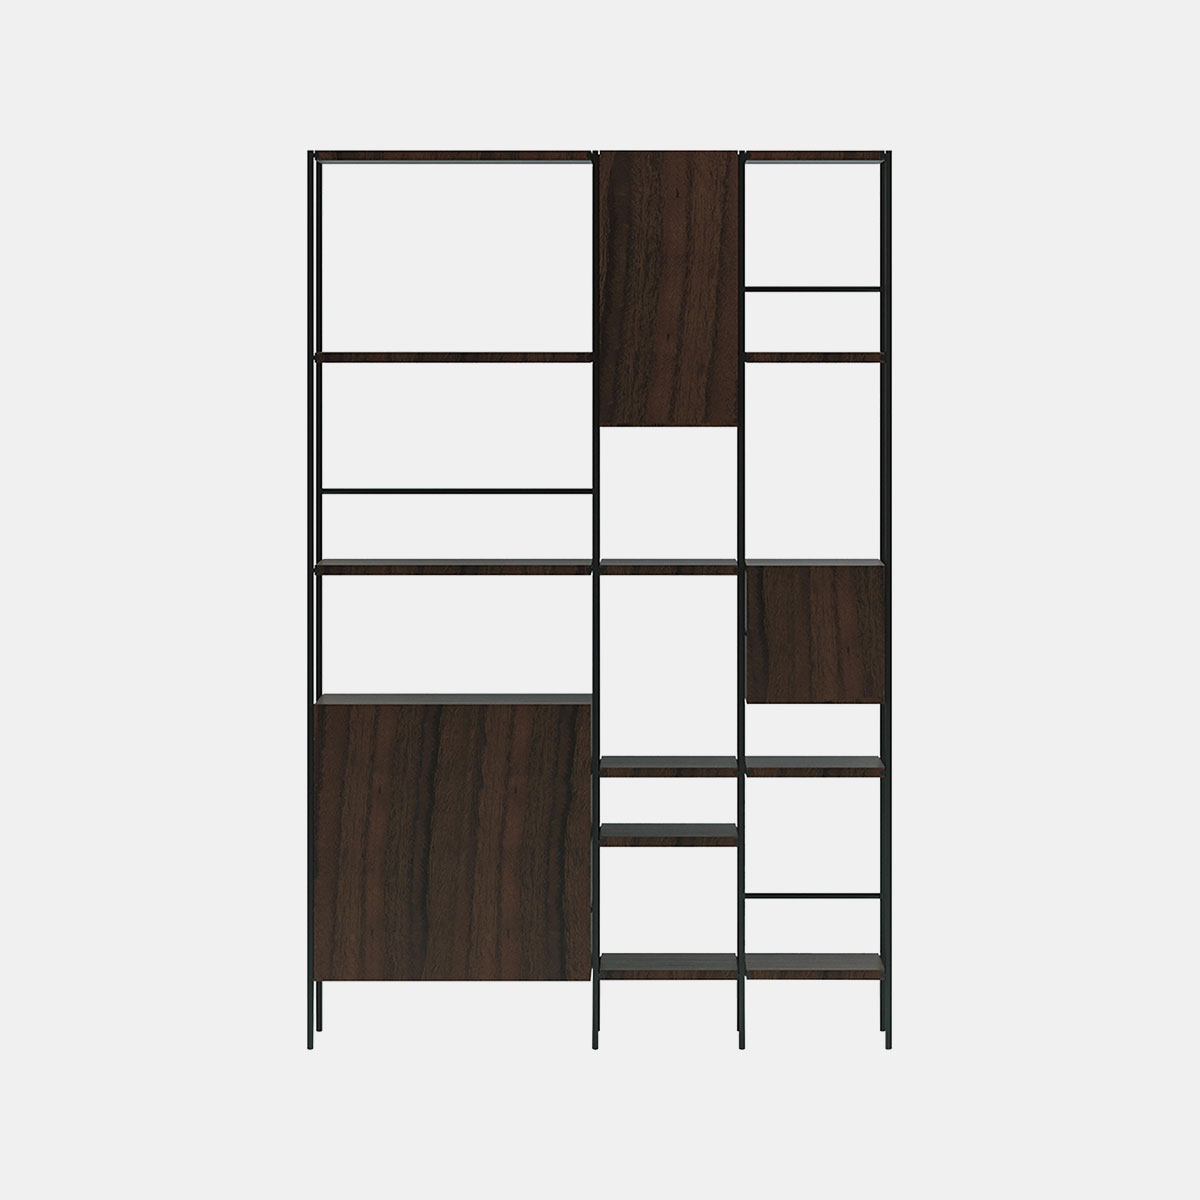 acerbis-giacomo-moor-outline-bookcase-walnoot-donker-gebeitst-staal-gesatineerd-zwart-nikkel-gelakt-001shop